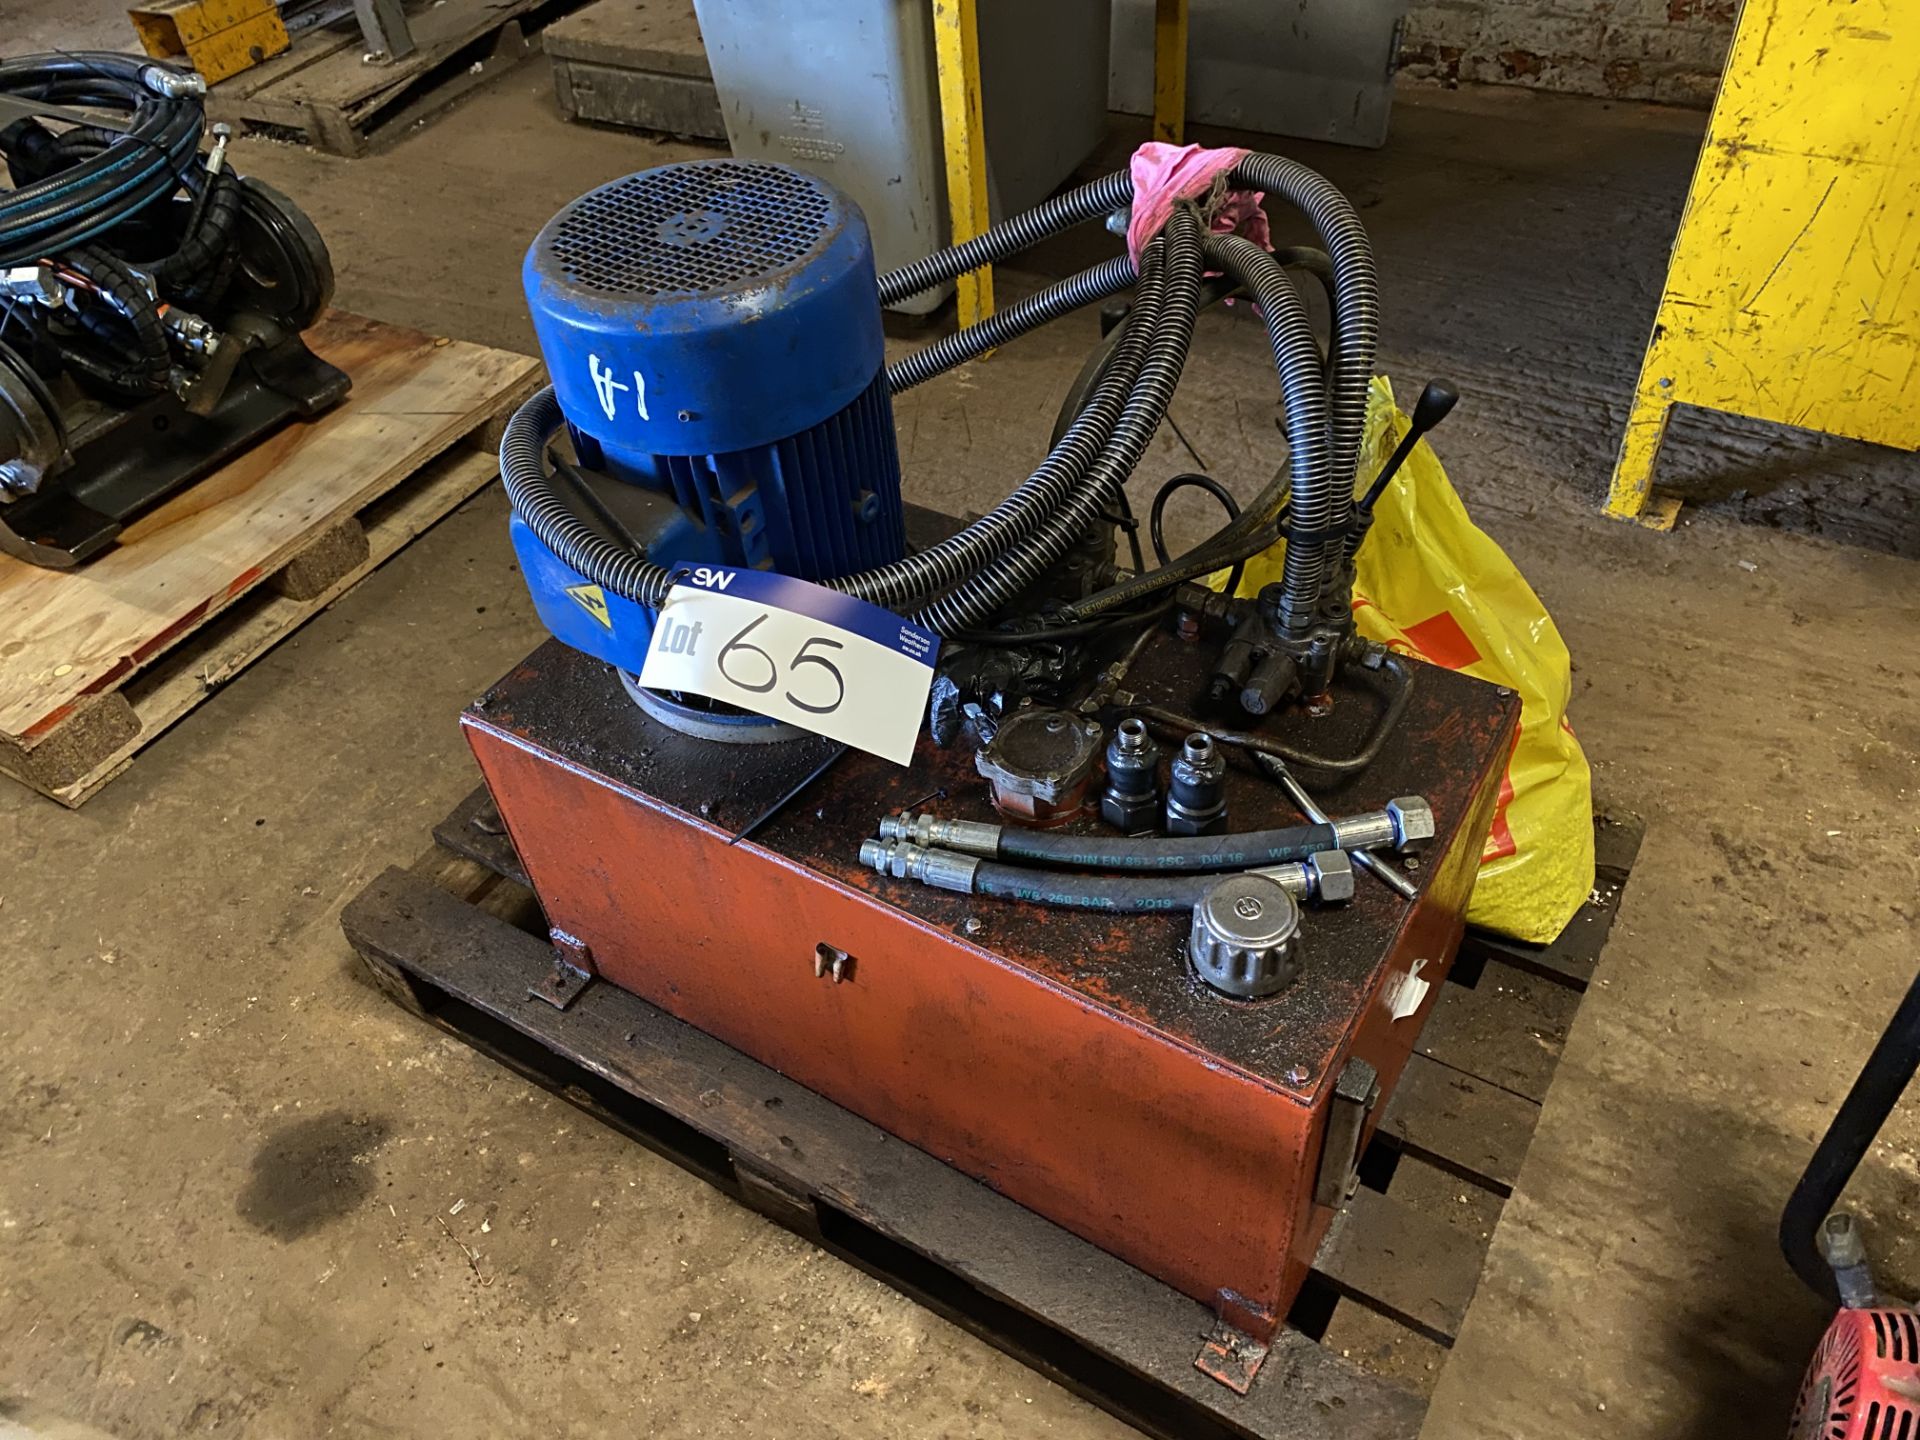 Hydraulic Power Pack, for testing hydraulic attach